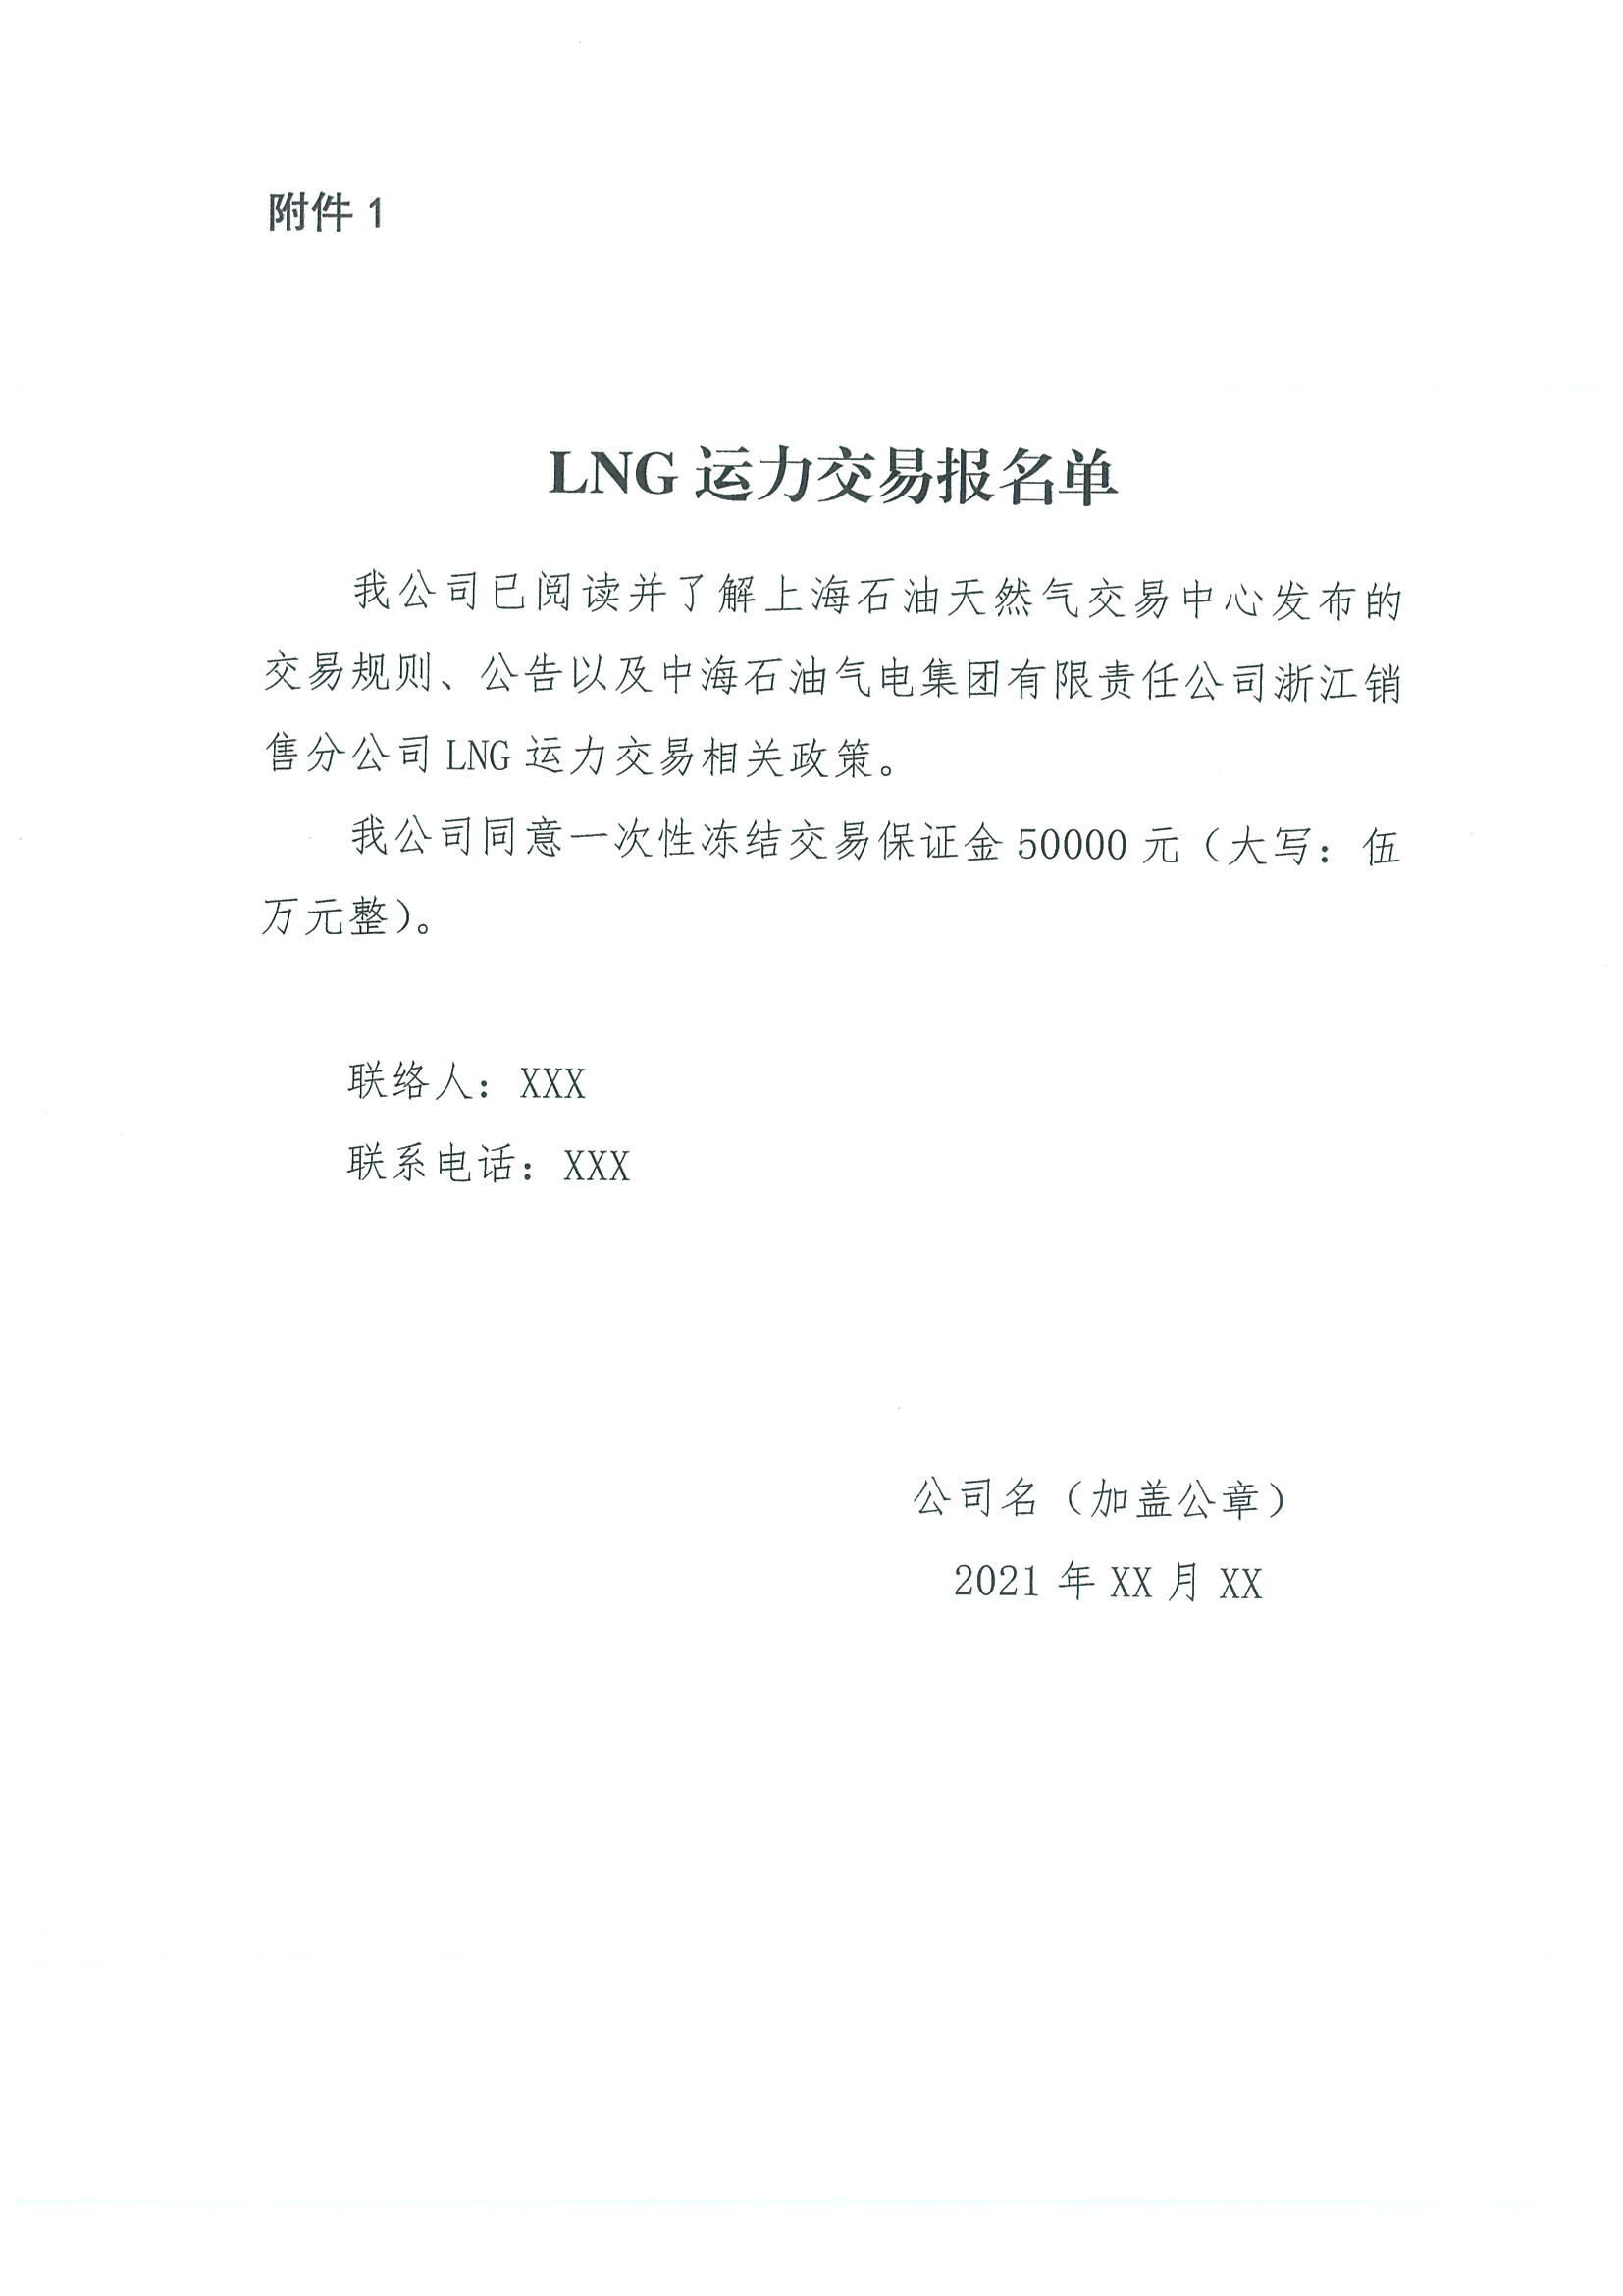 附件3、关于开展LNG运力竞价交易的公告11.9_页面_7.png